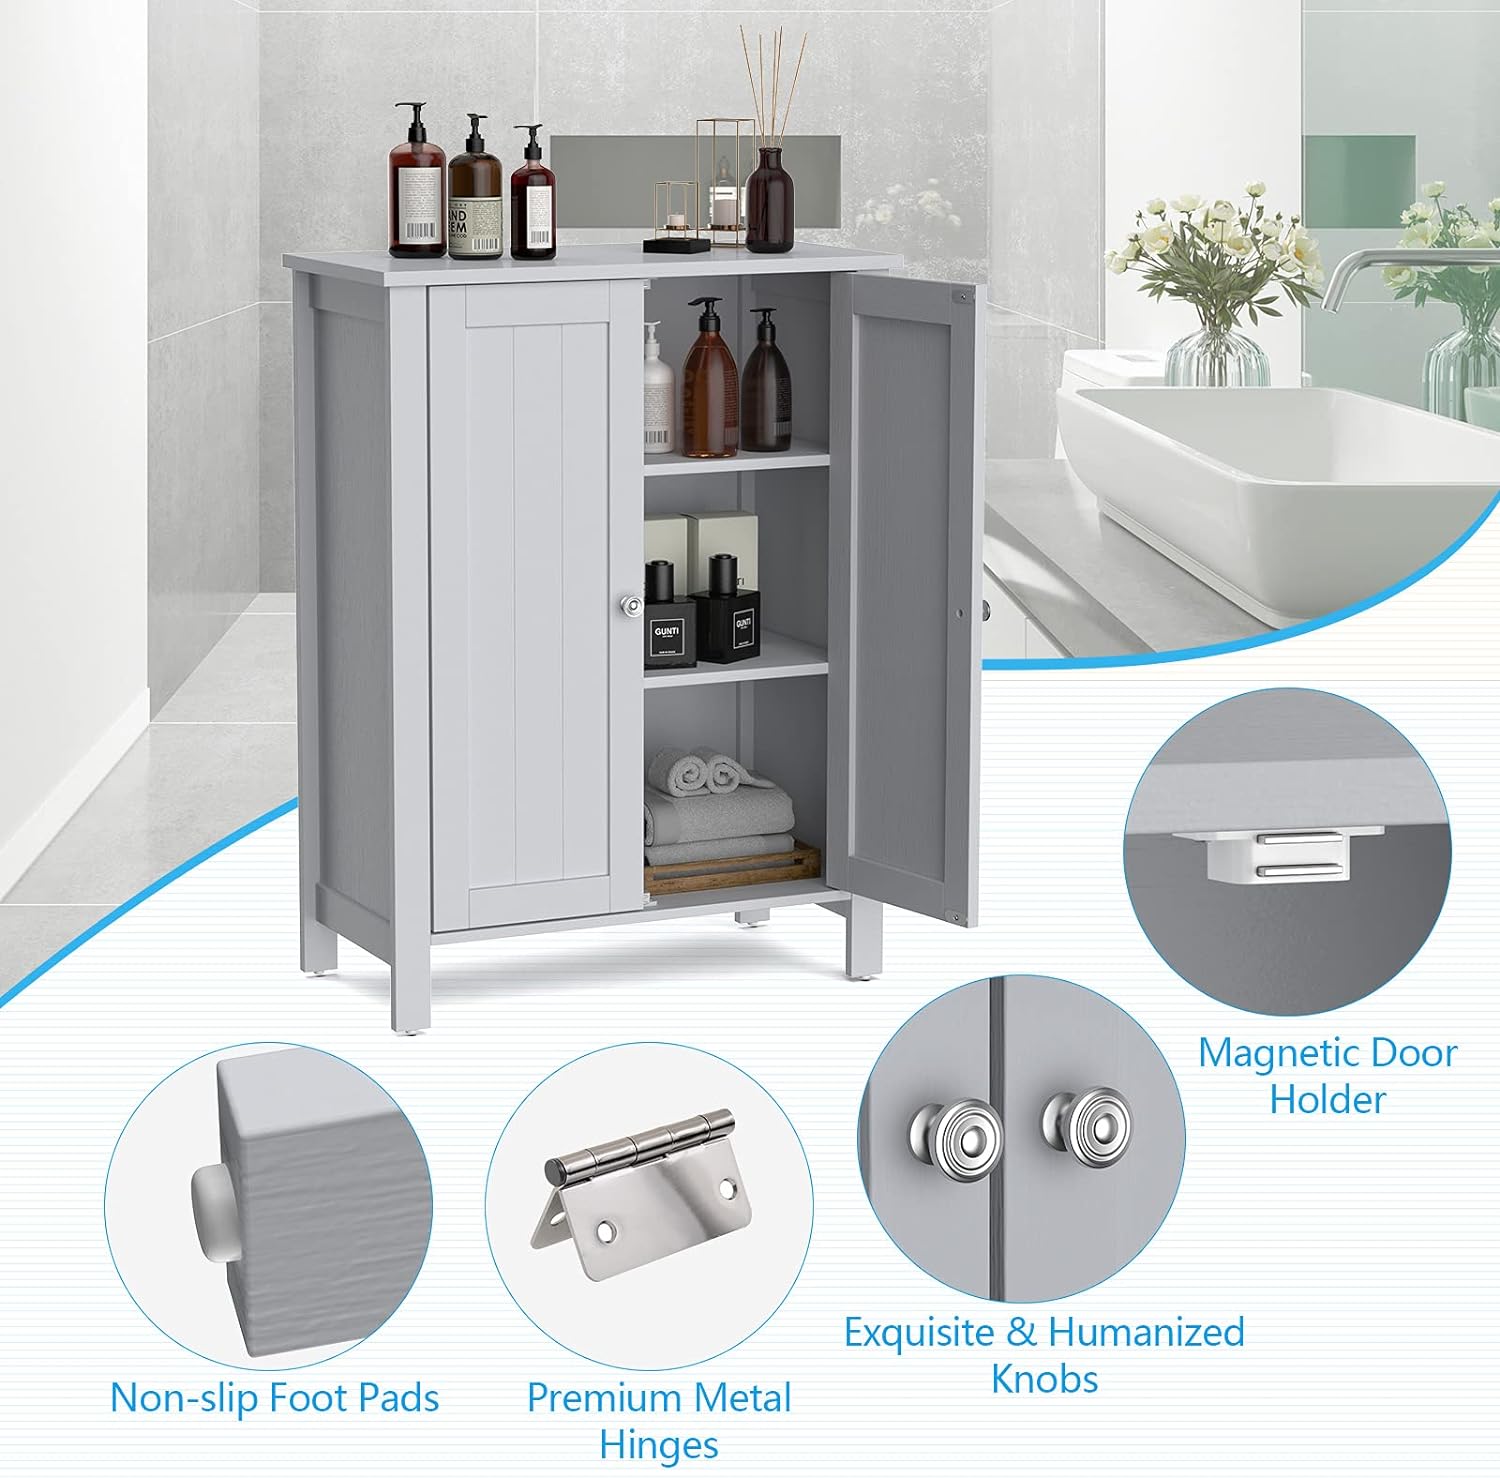 Armario de suelo de baño, armario de almacenamiento de 3 niveles con puerta